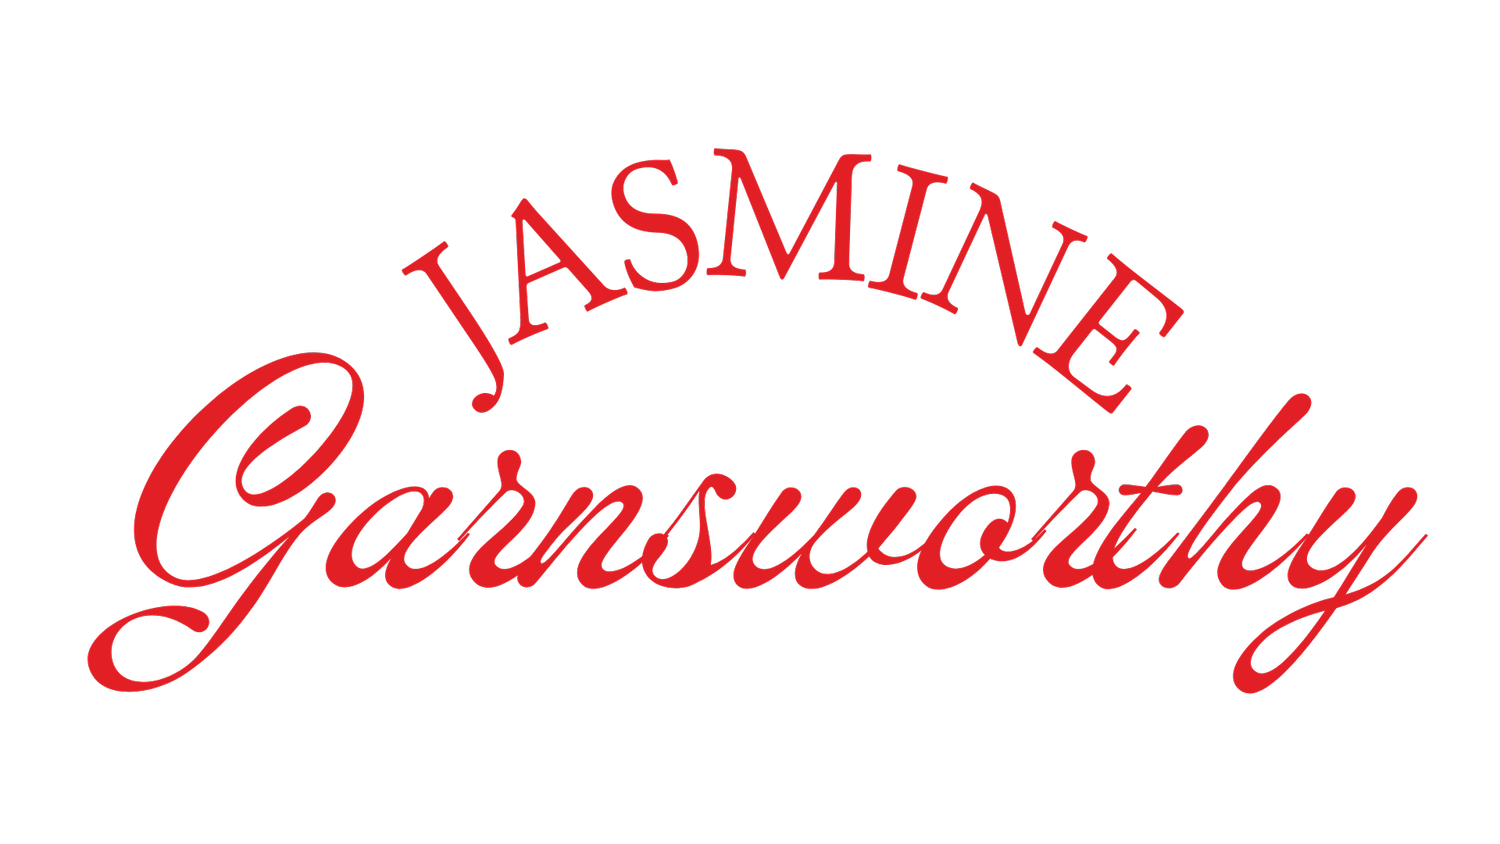 Jasmine Garnsworthy